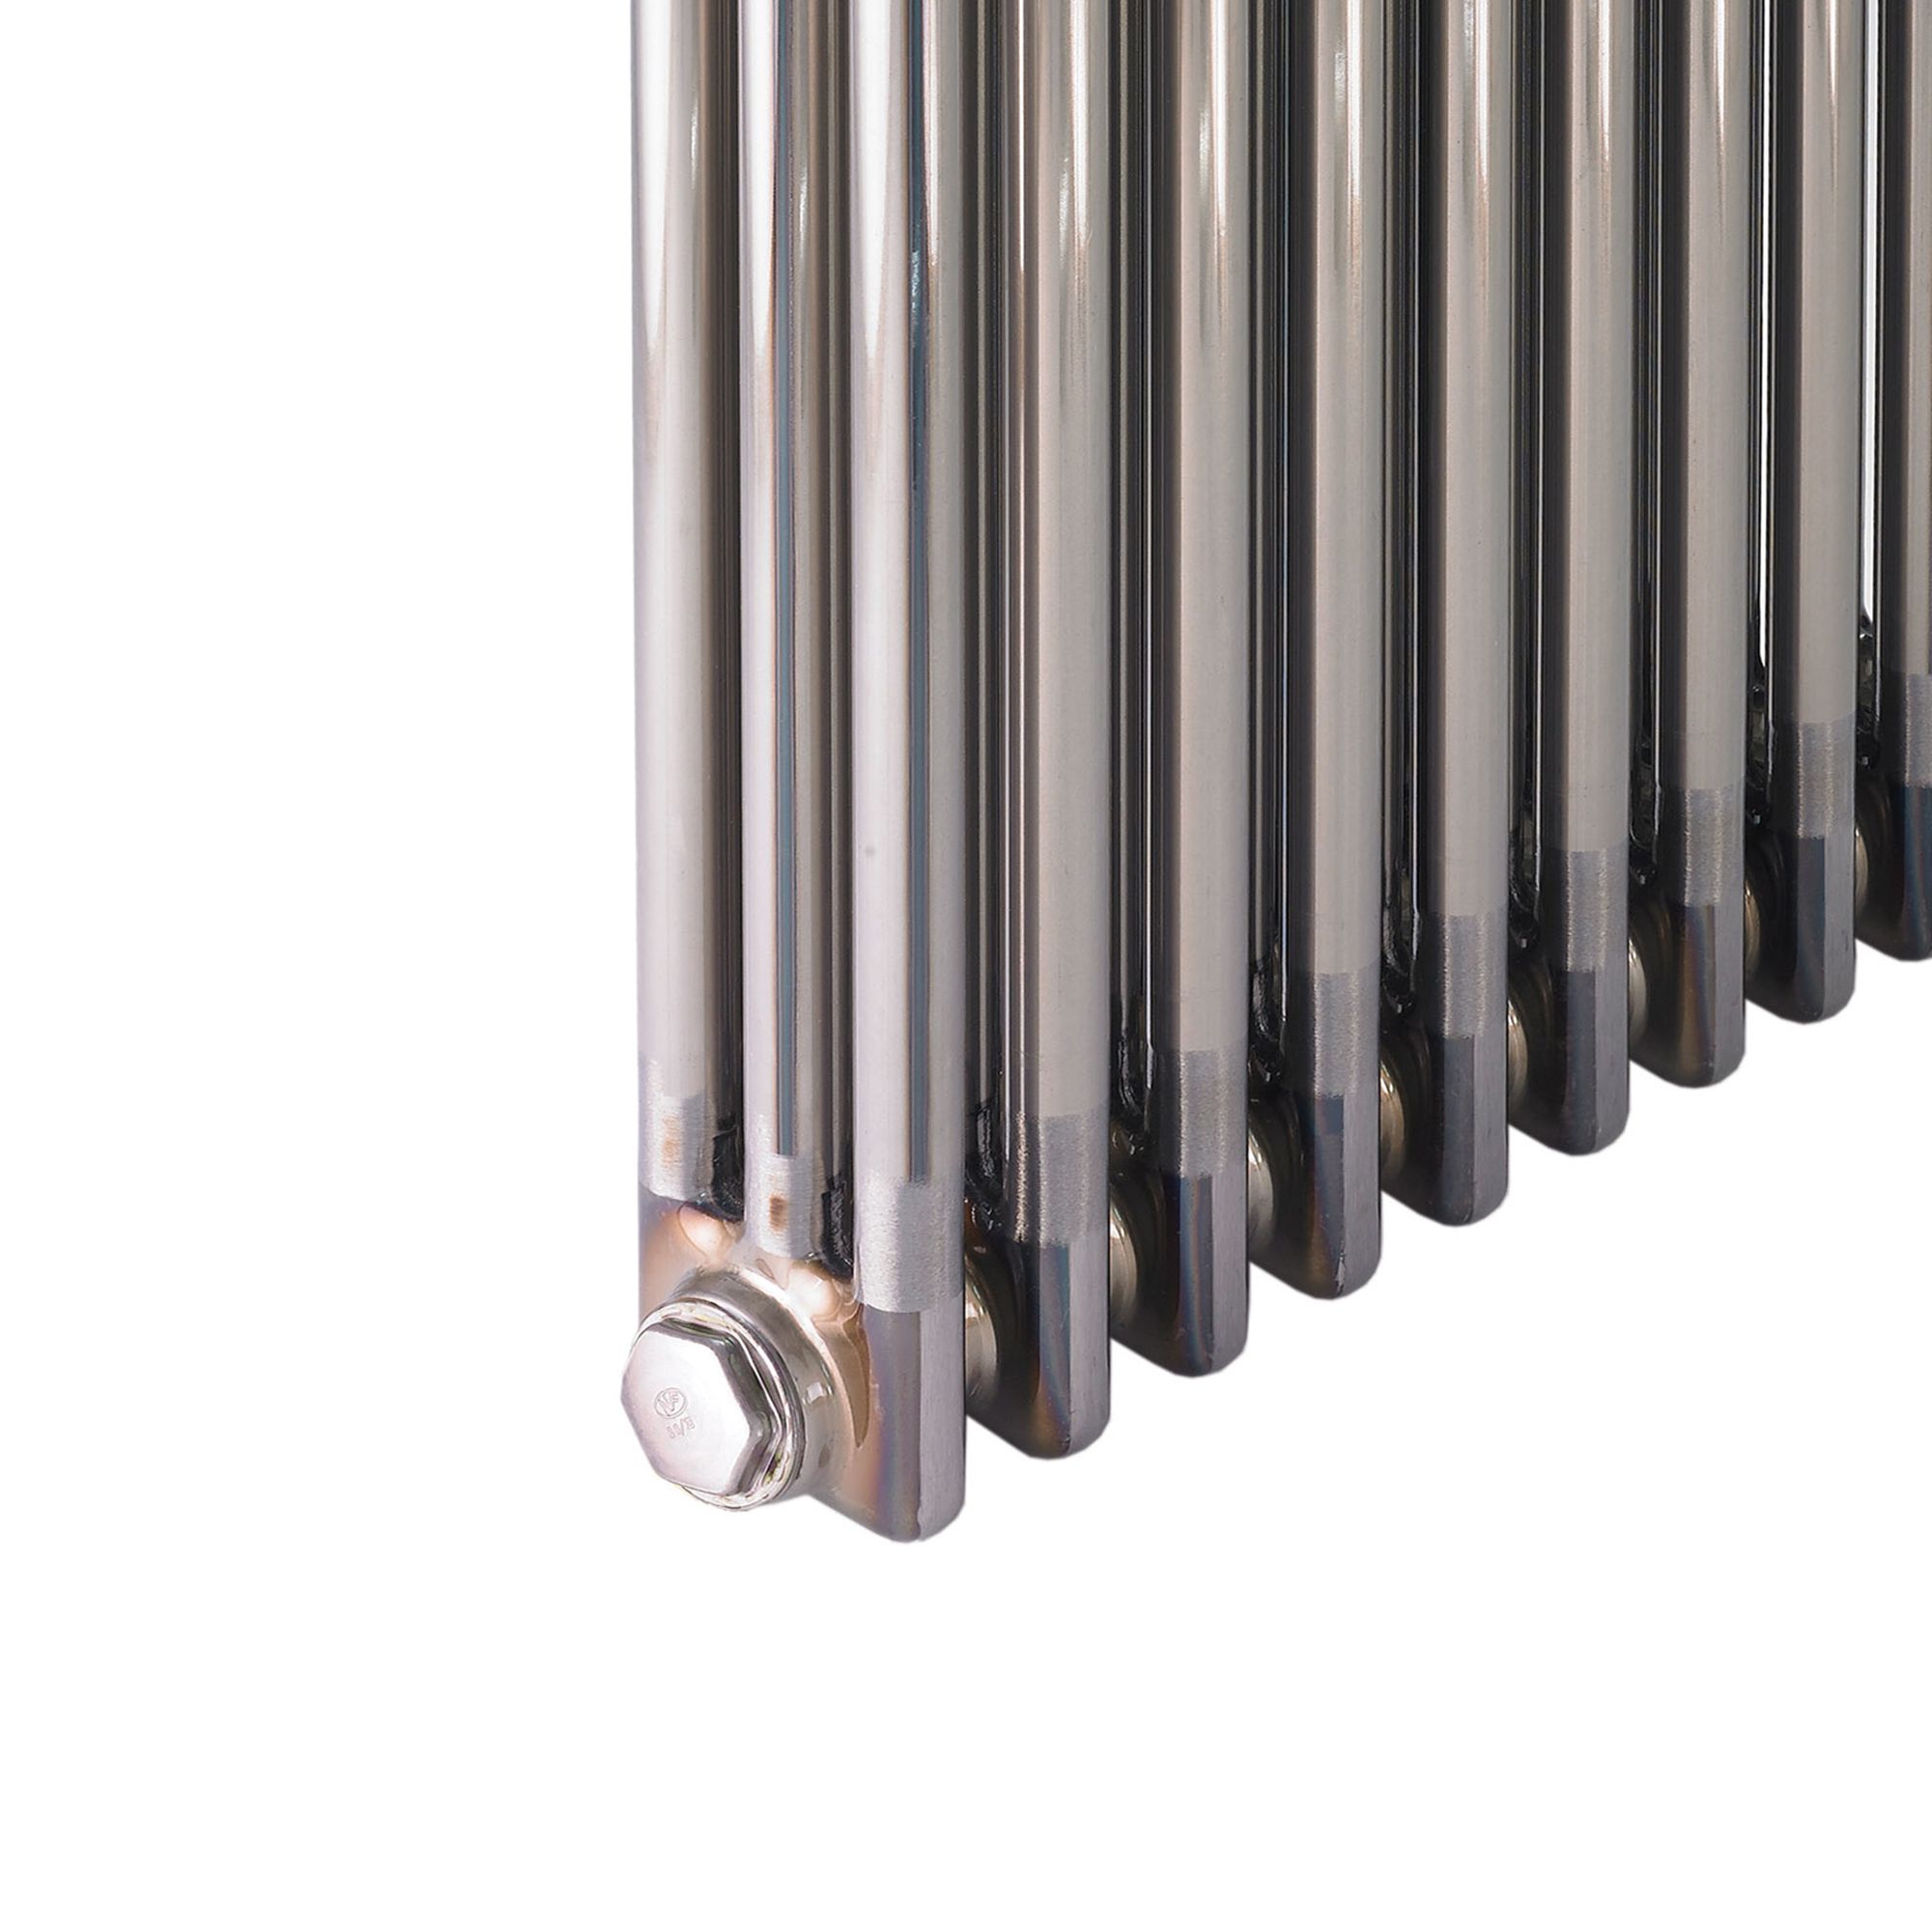 Acova Raw metal 3 Column Radiator, (W)812mm x (H)600mm